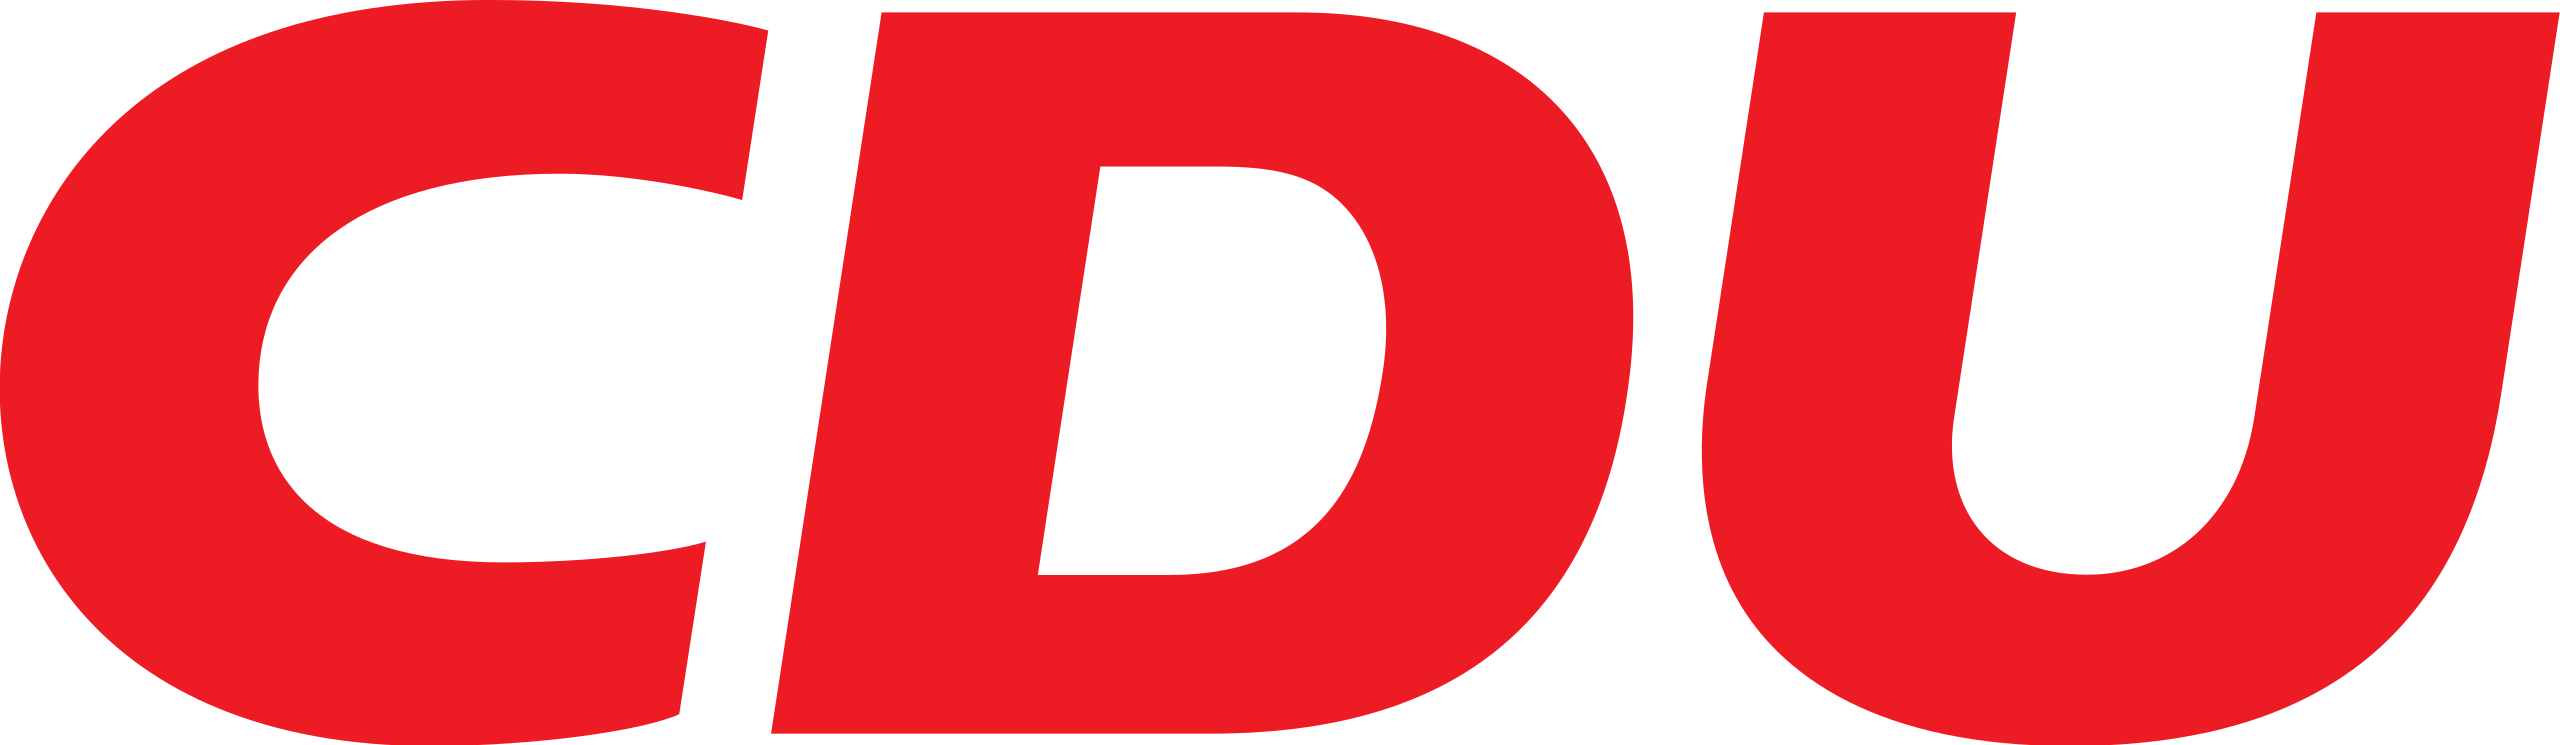 2560px-CDU_logo.svg